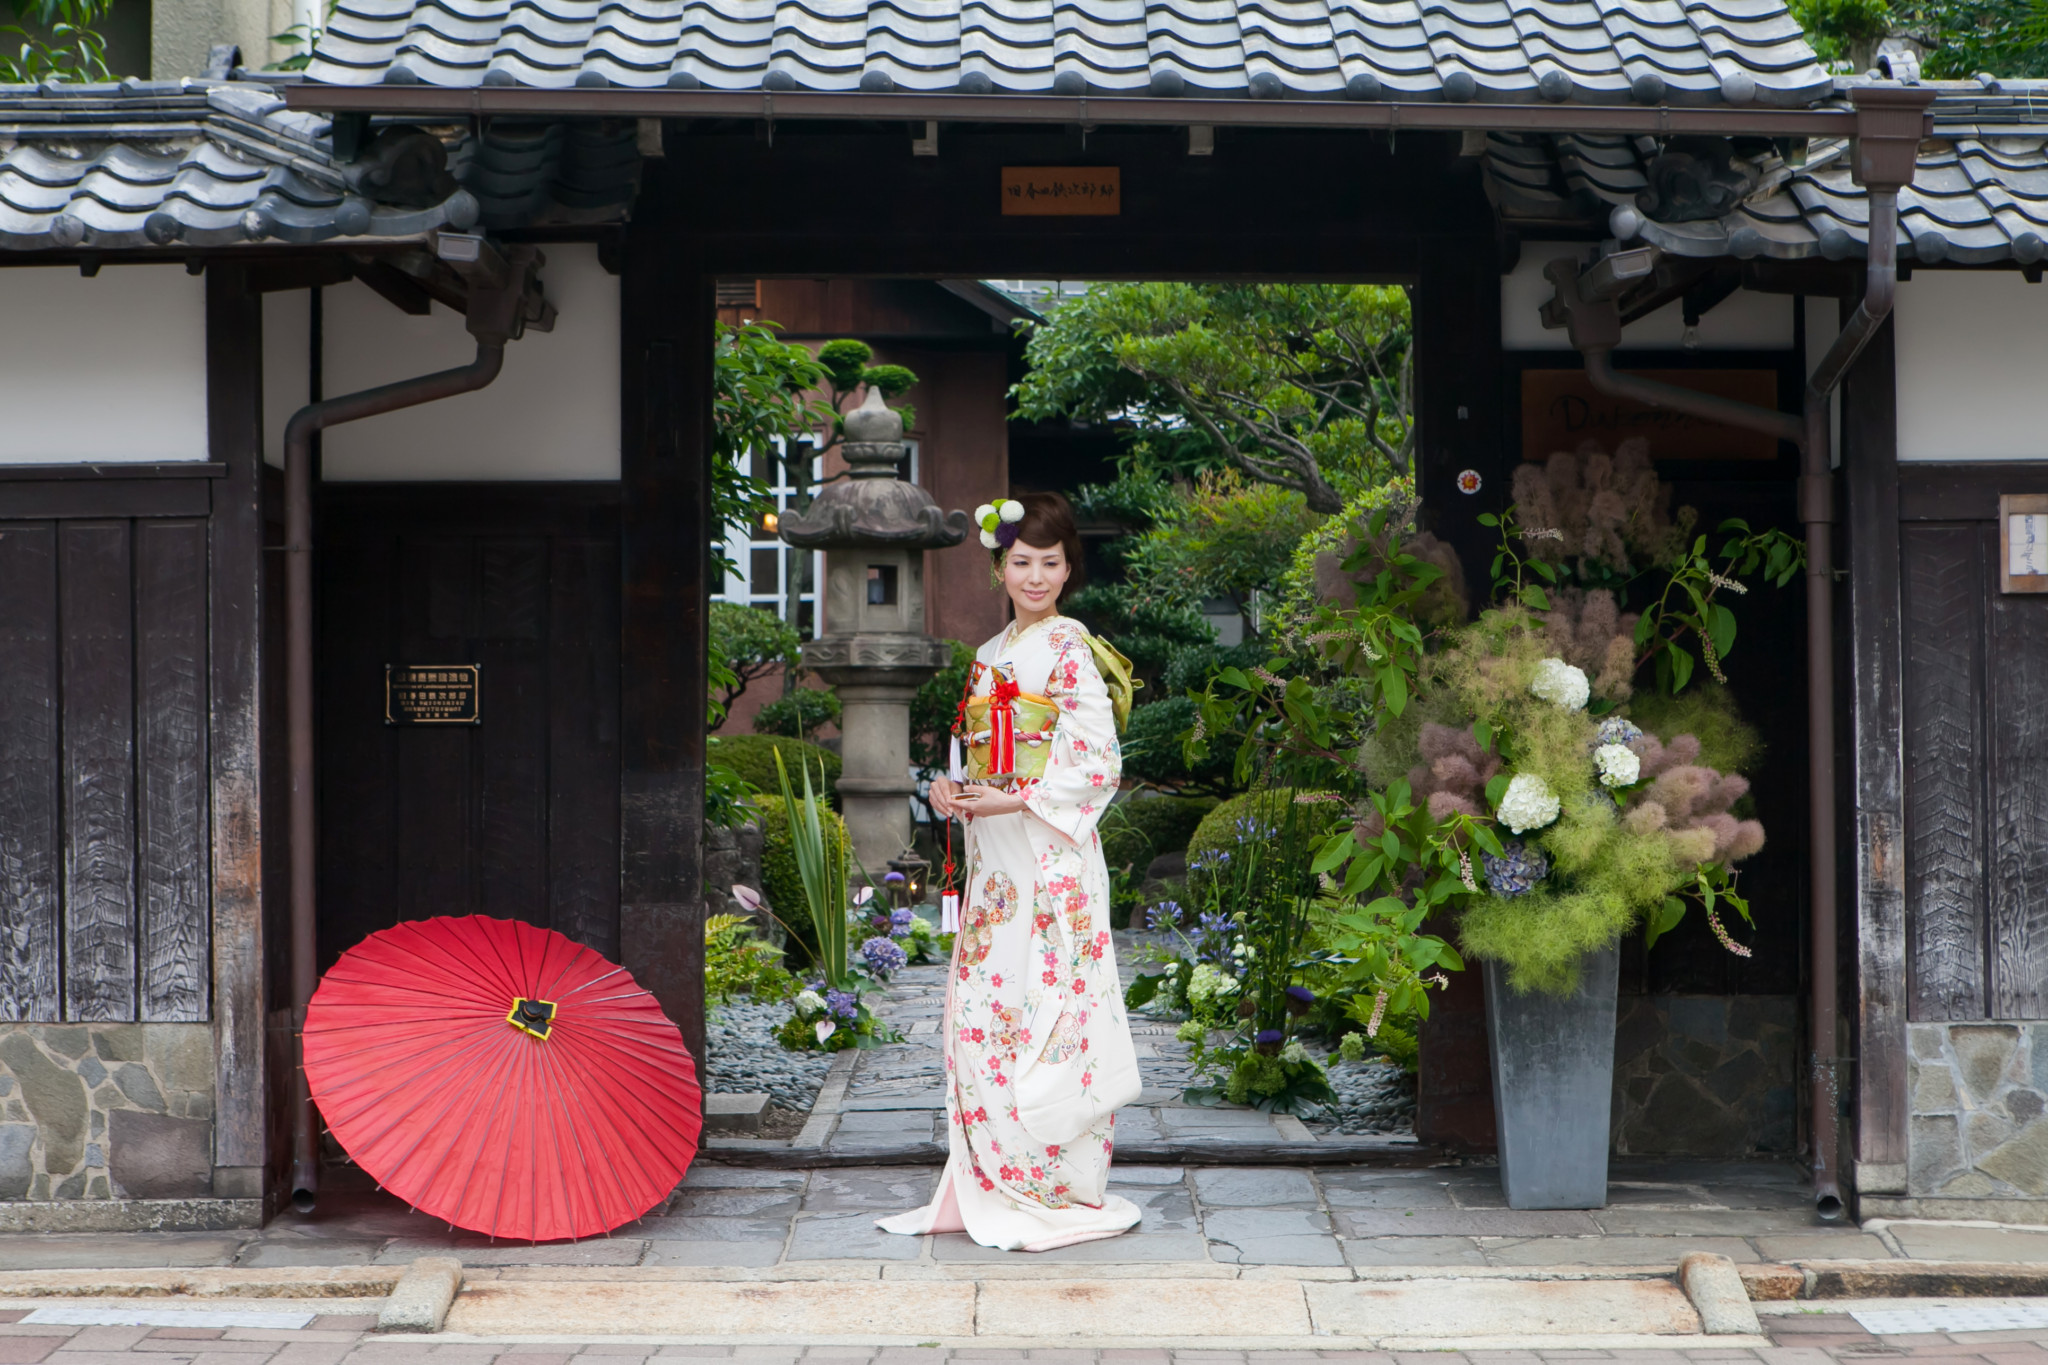 21年 結婚式は和装で挙げたい 名古屋で和装ウエディングをするならおすすめの会場をご紹介 でら婚